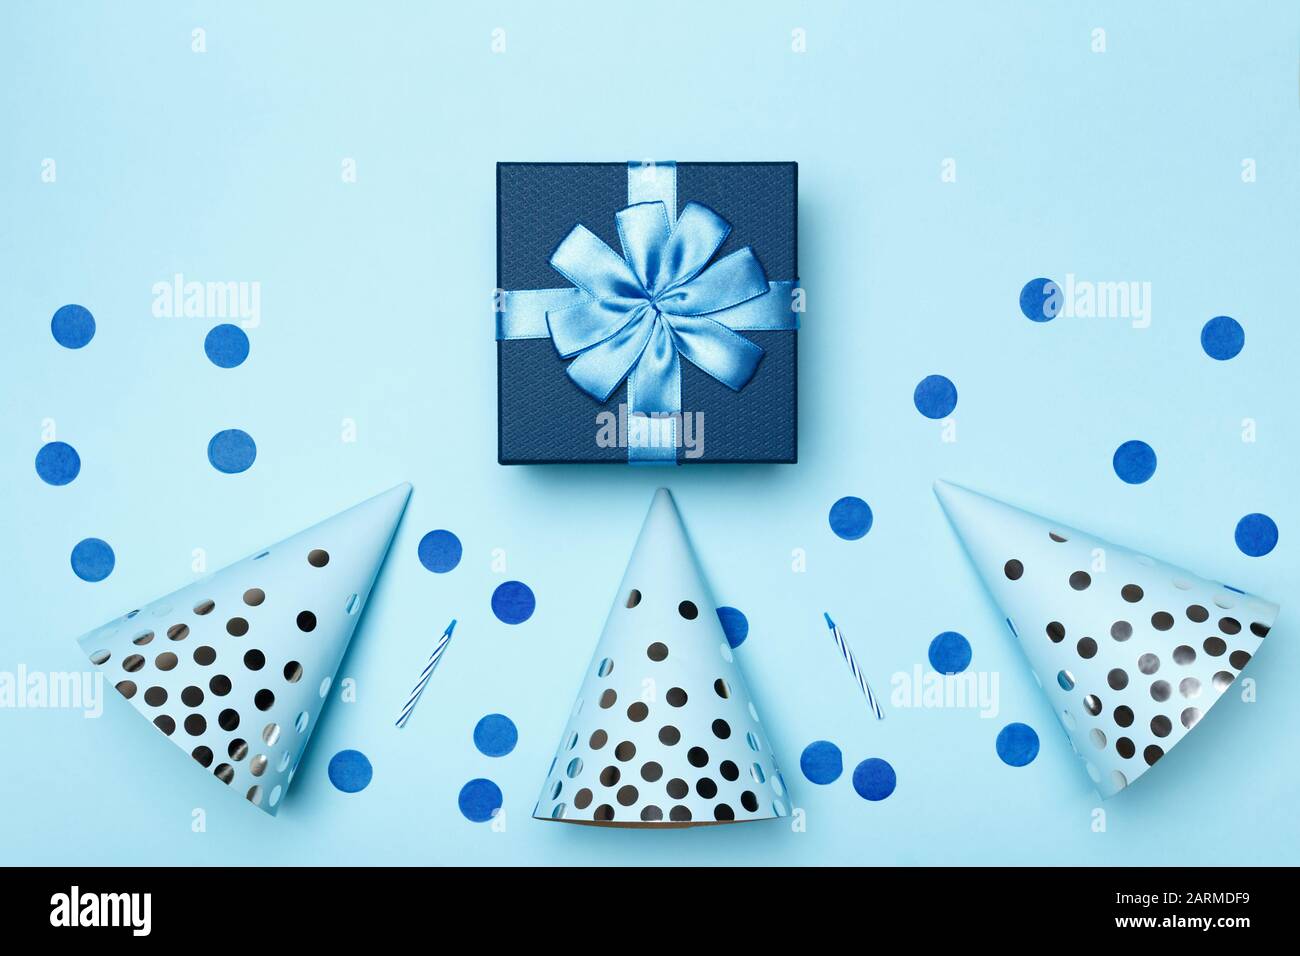 Cumpleaños azul fondo composición con fiesta regalo obsequio gorras confetti velas top vista plano laico. Foto de stock